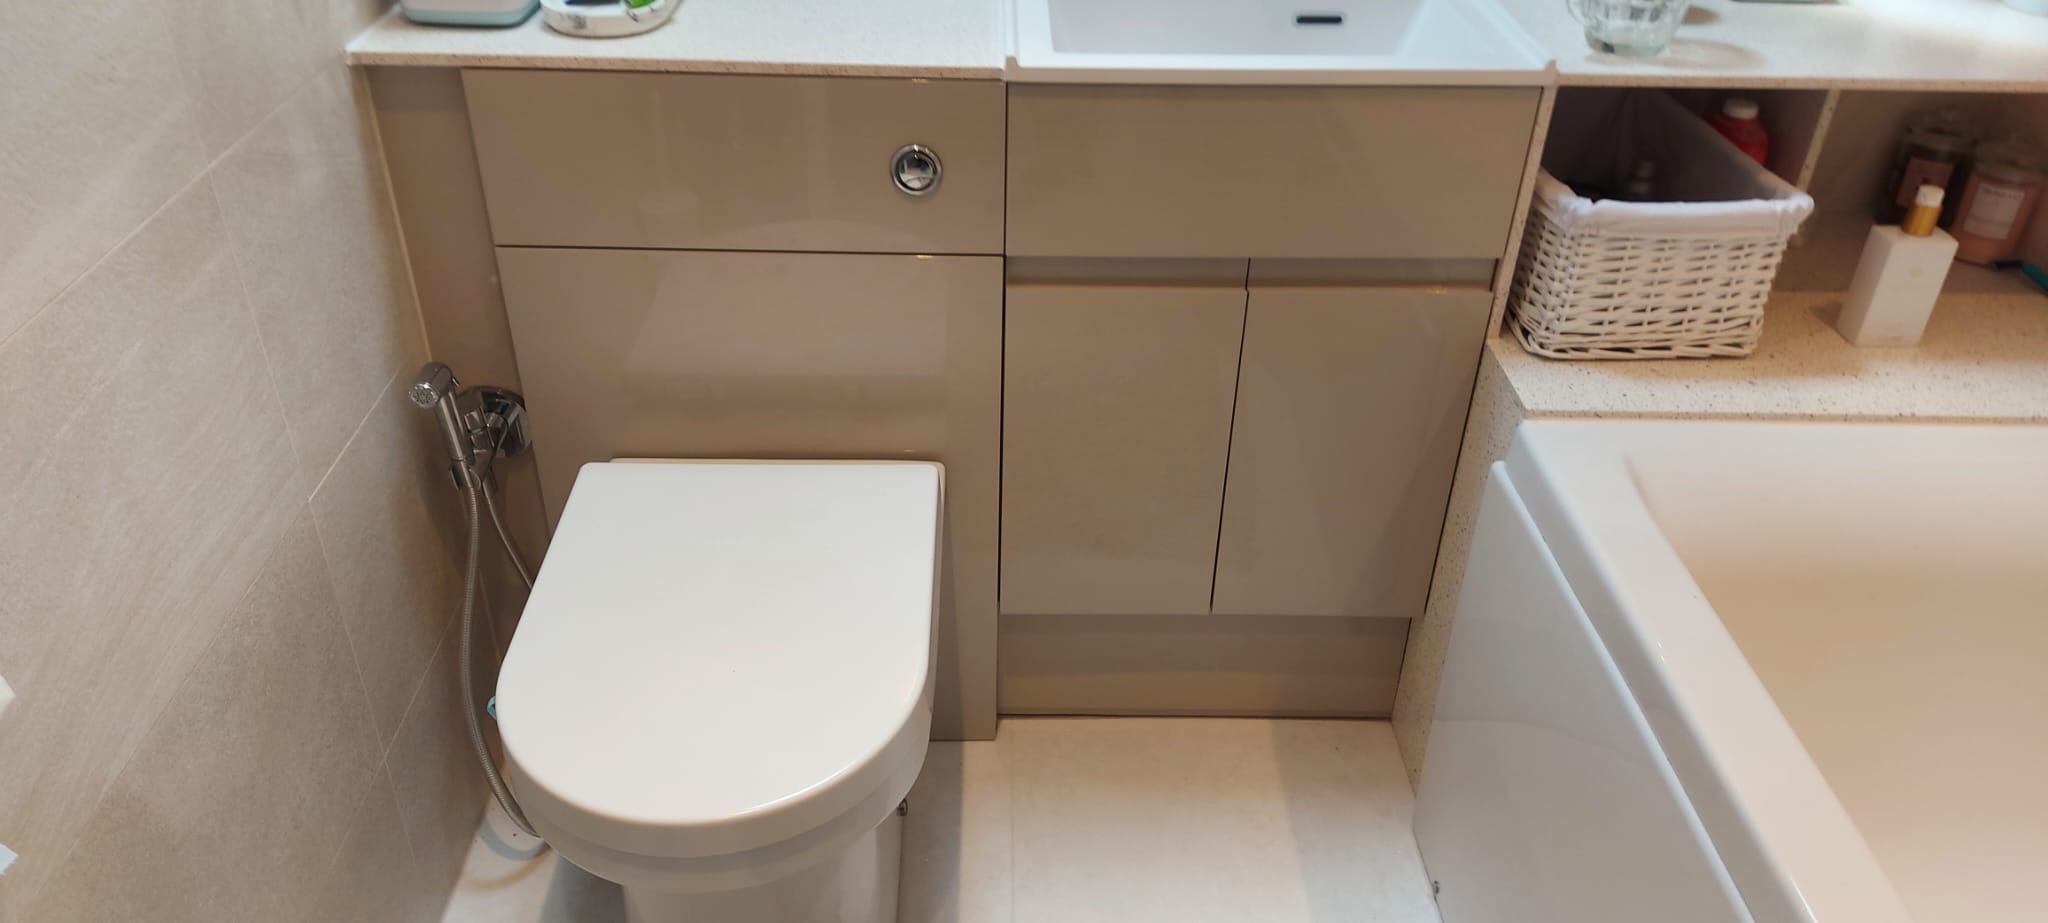 Full Bathroom Installs in Witney